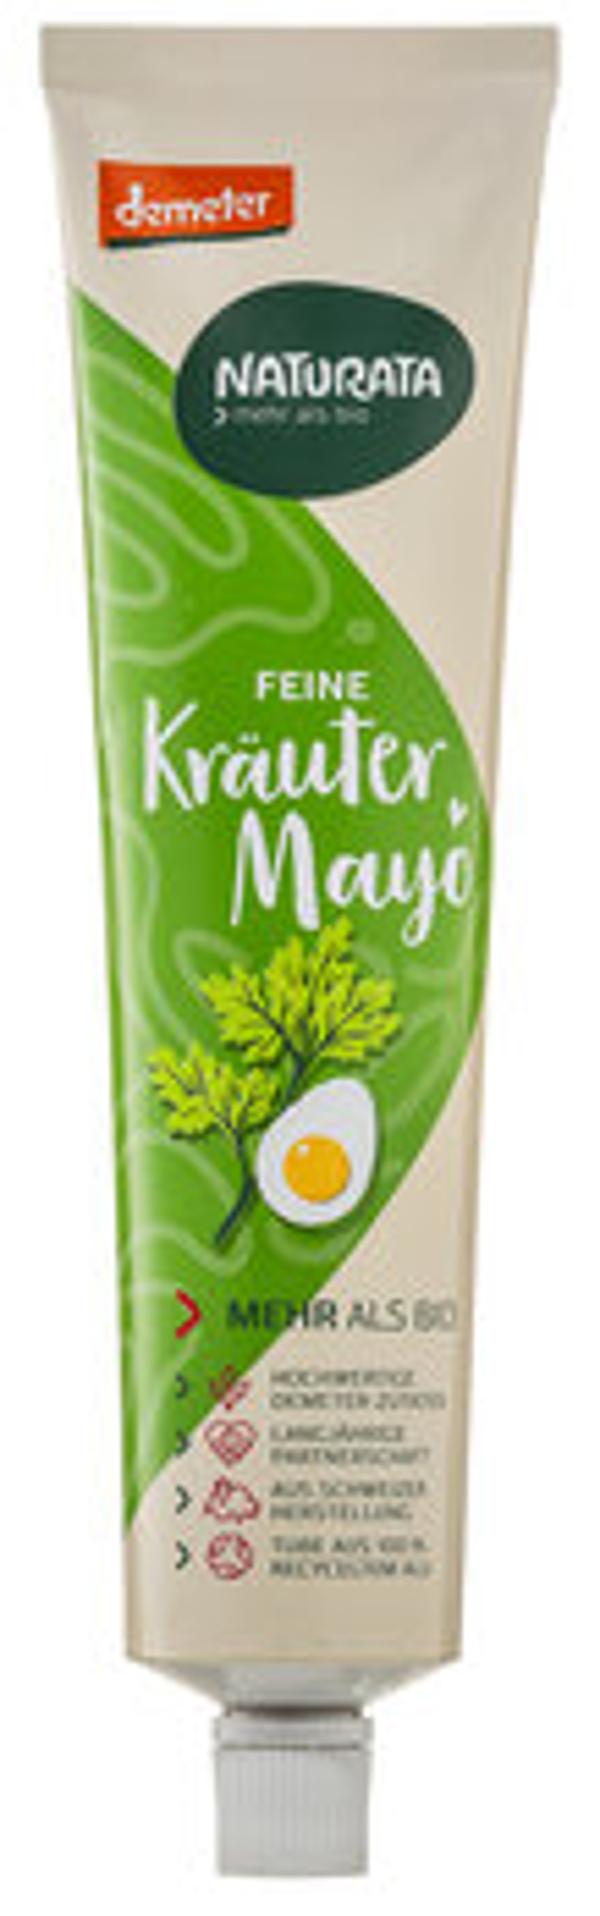 Produktfoto zu Feine Kräuter Mayo, 185 ml - 40% reduziert, MHD 23.04.2024